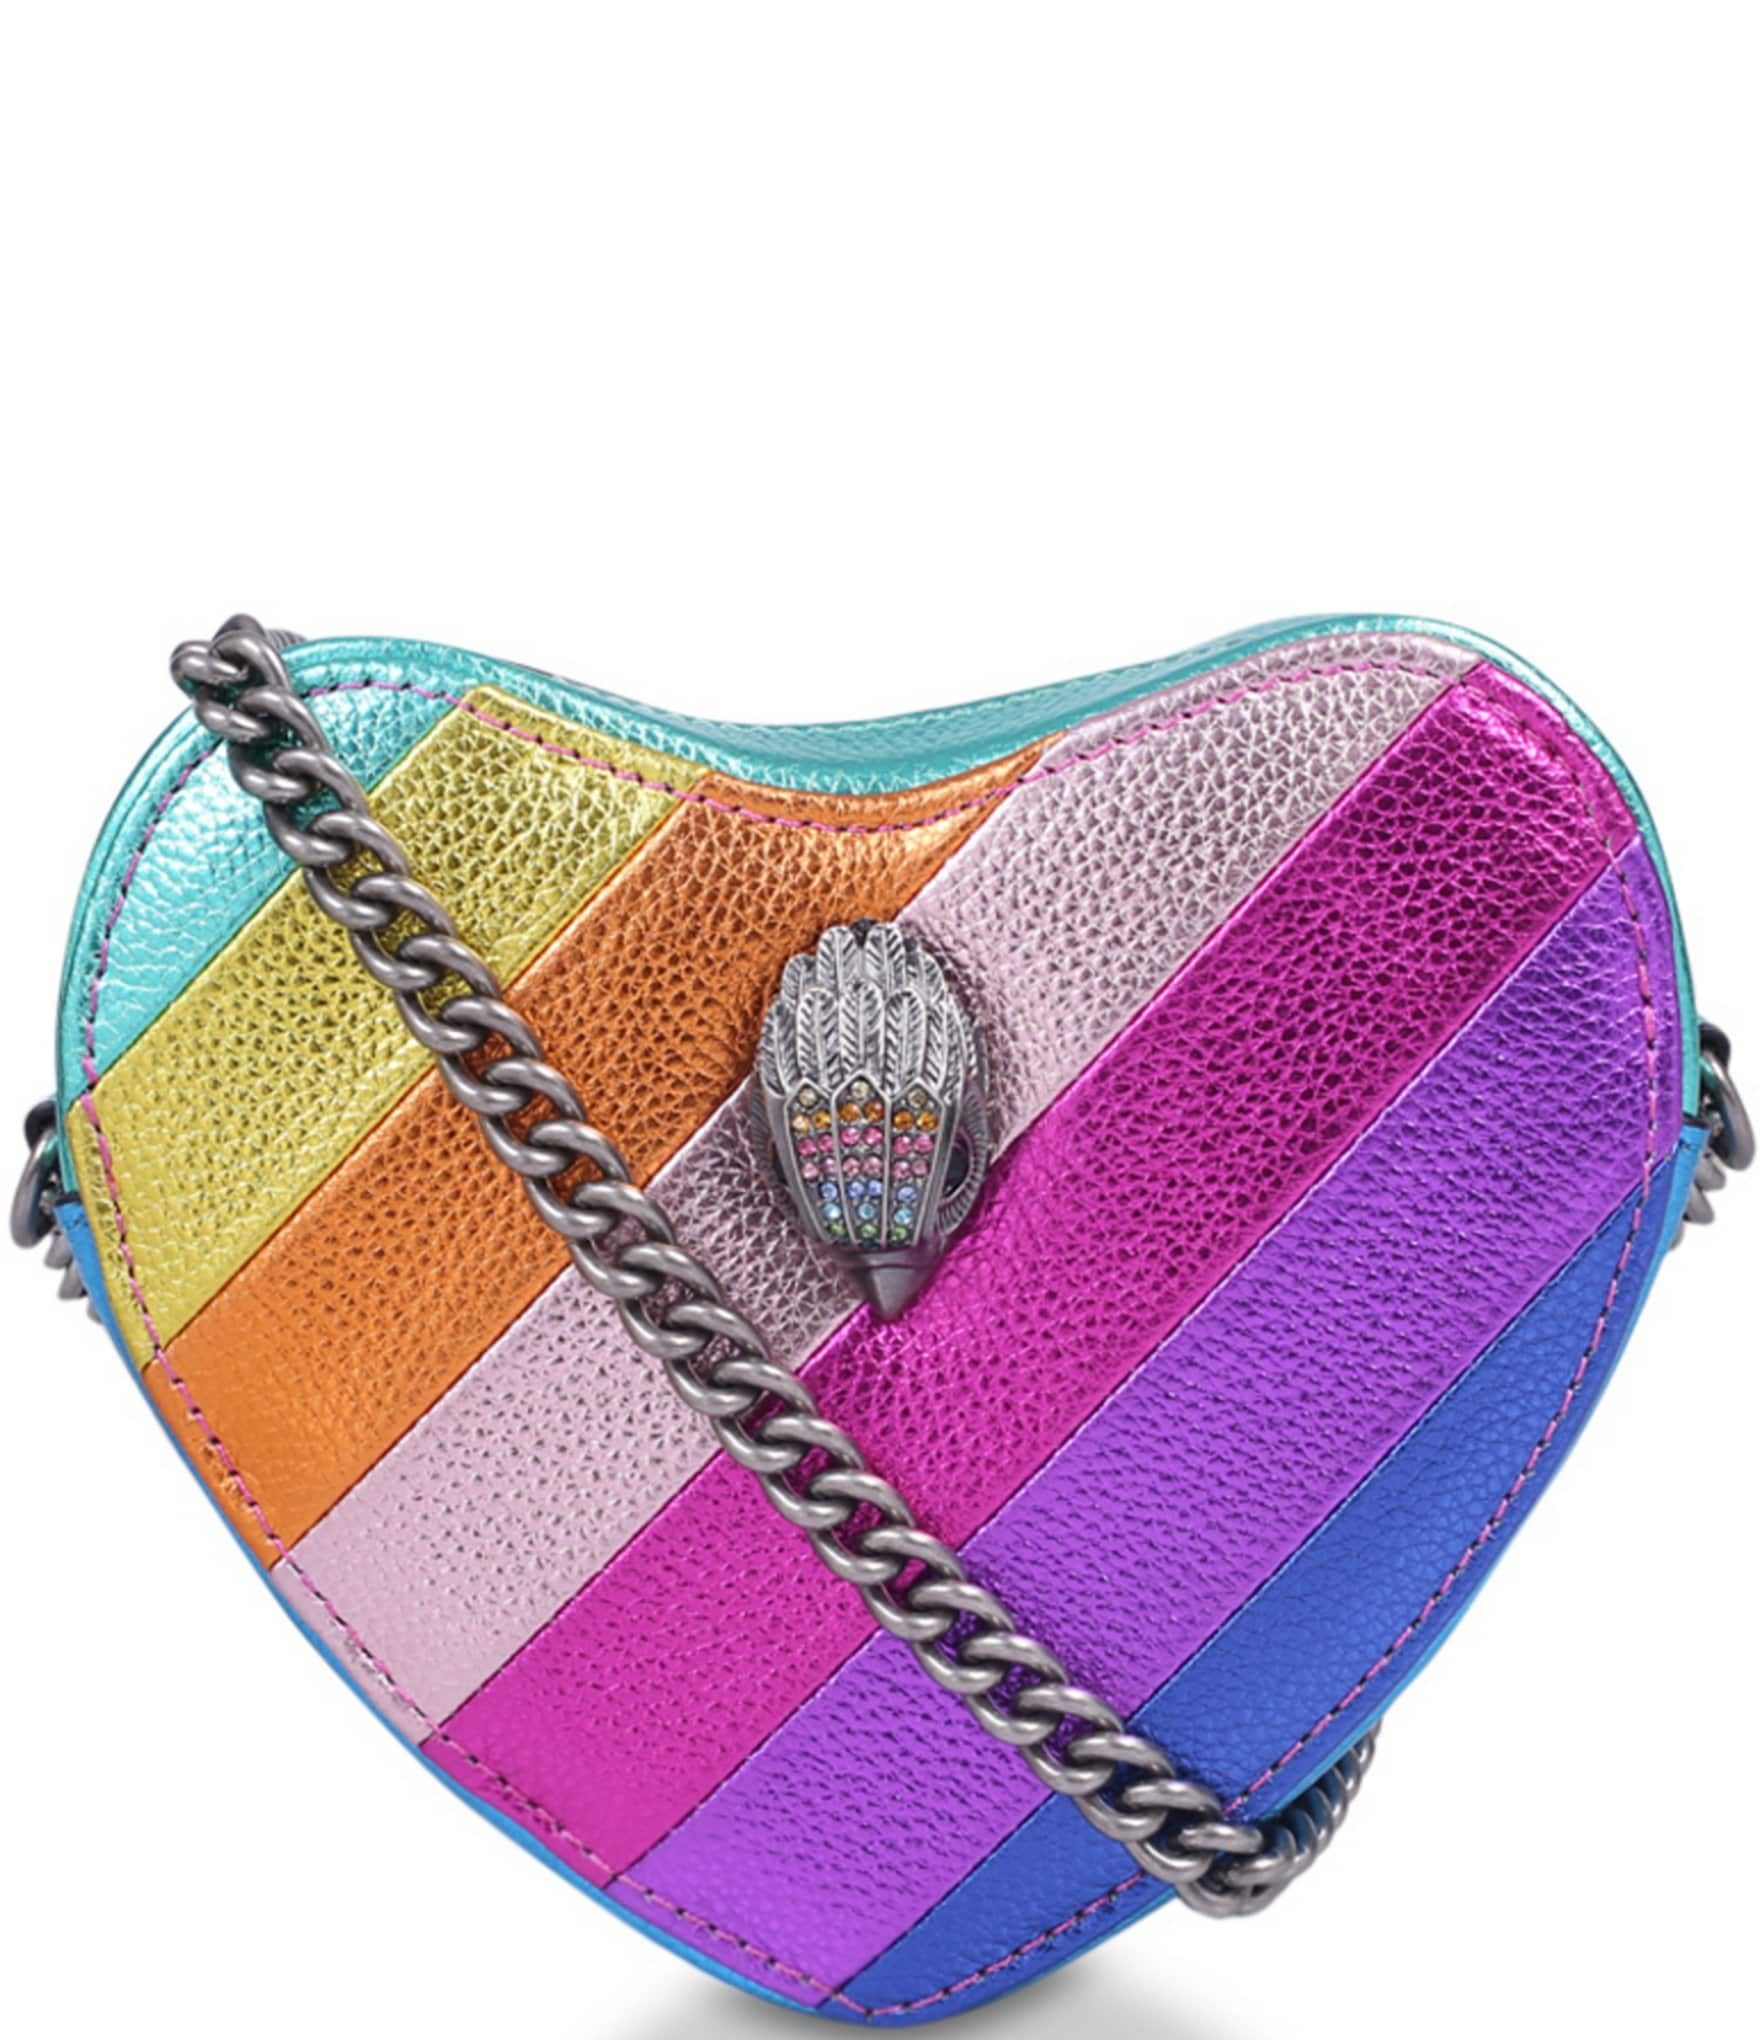 Kensington Rainbow Heart Crossbody Bag | Dillard's